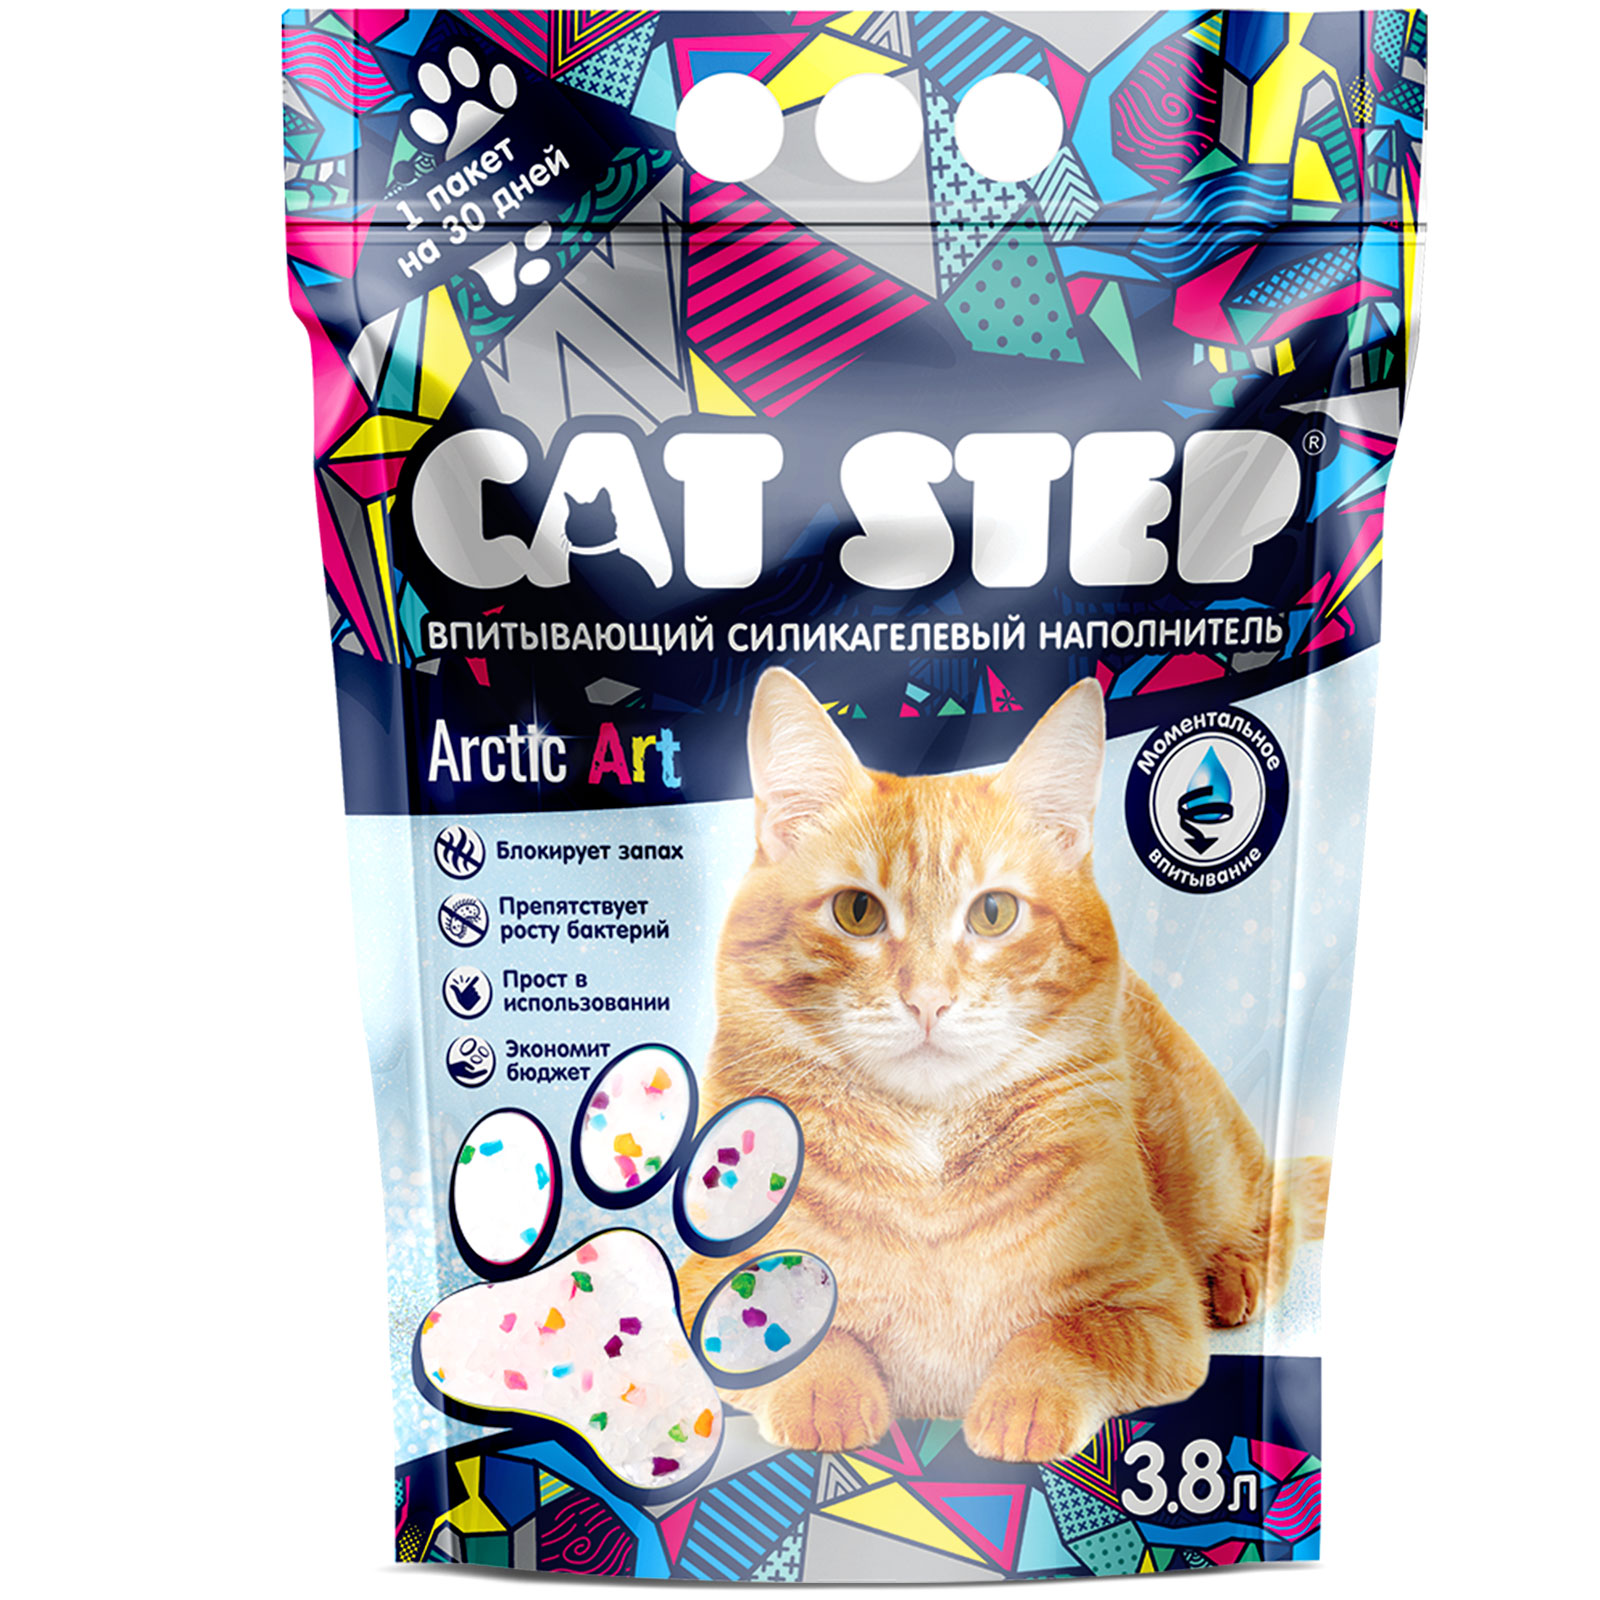 Наполнитель для кошек Cat Step Arctic Art впитывающий силикагелевый 3.8л - фото 2